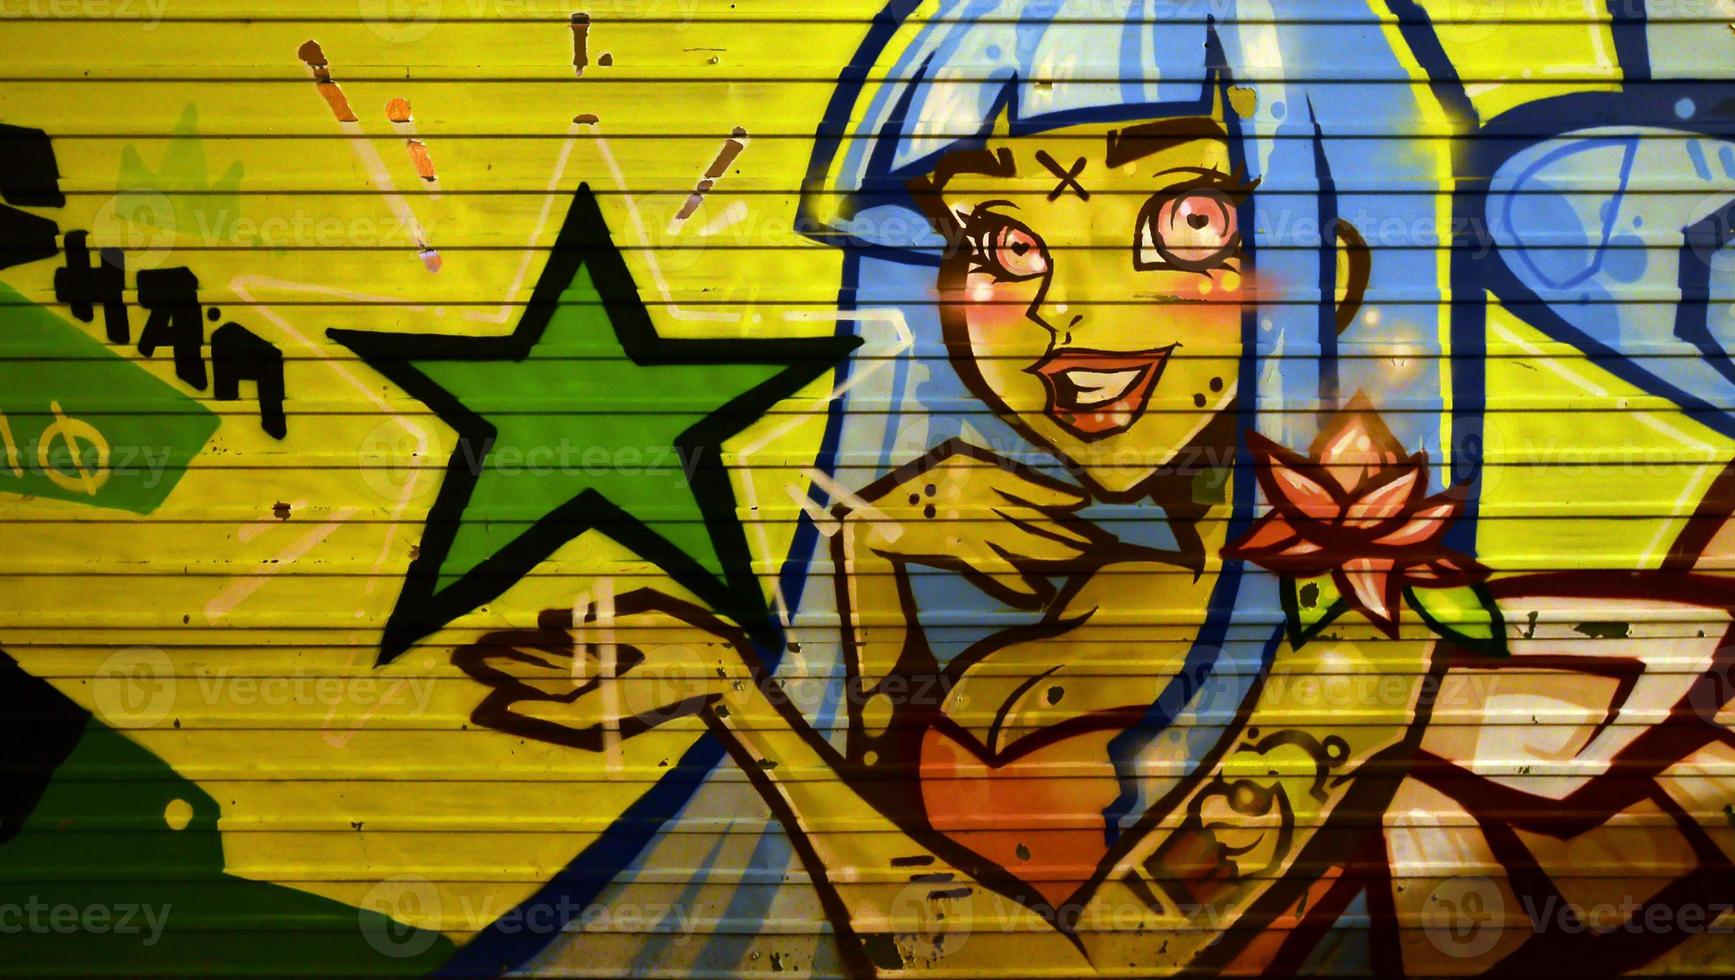 a textura da parede, decorada em desenho de grafite com a imagem de uma linda garota de cabelo azul foto